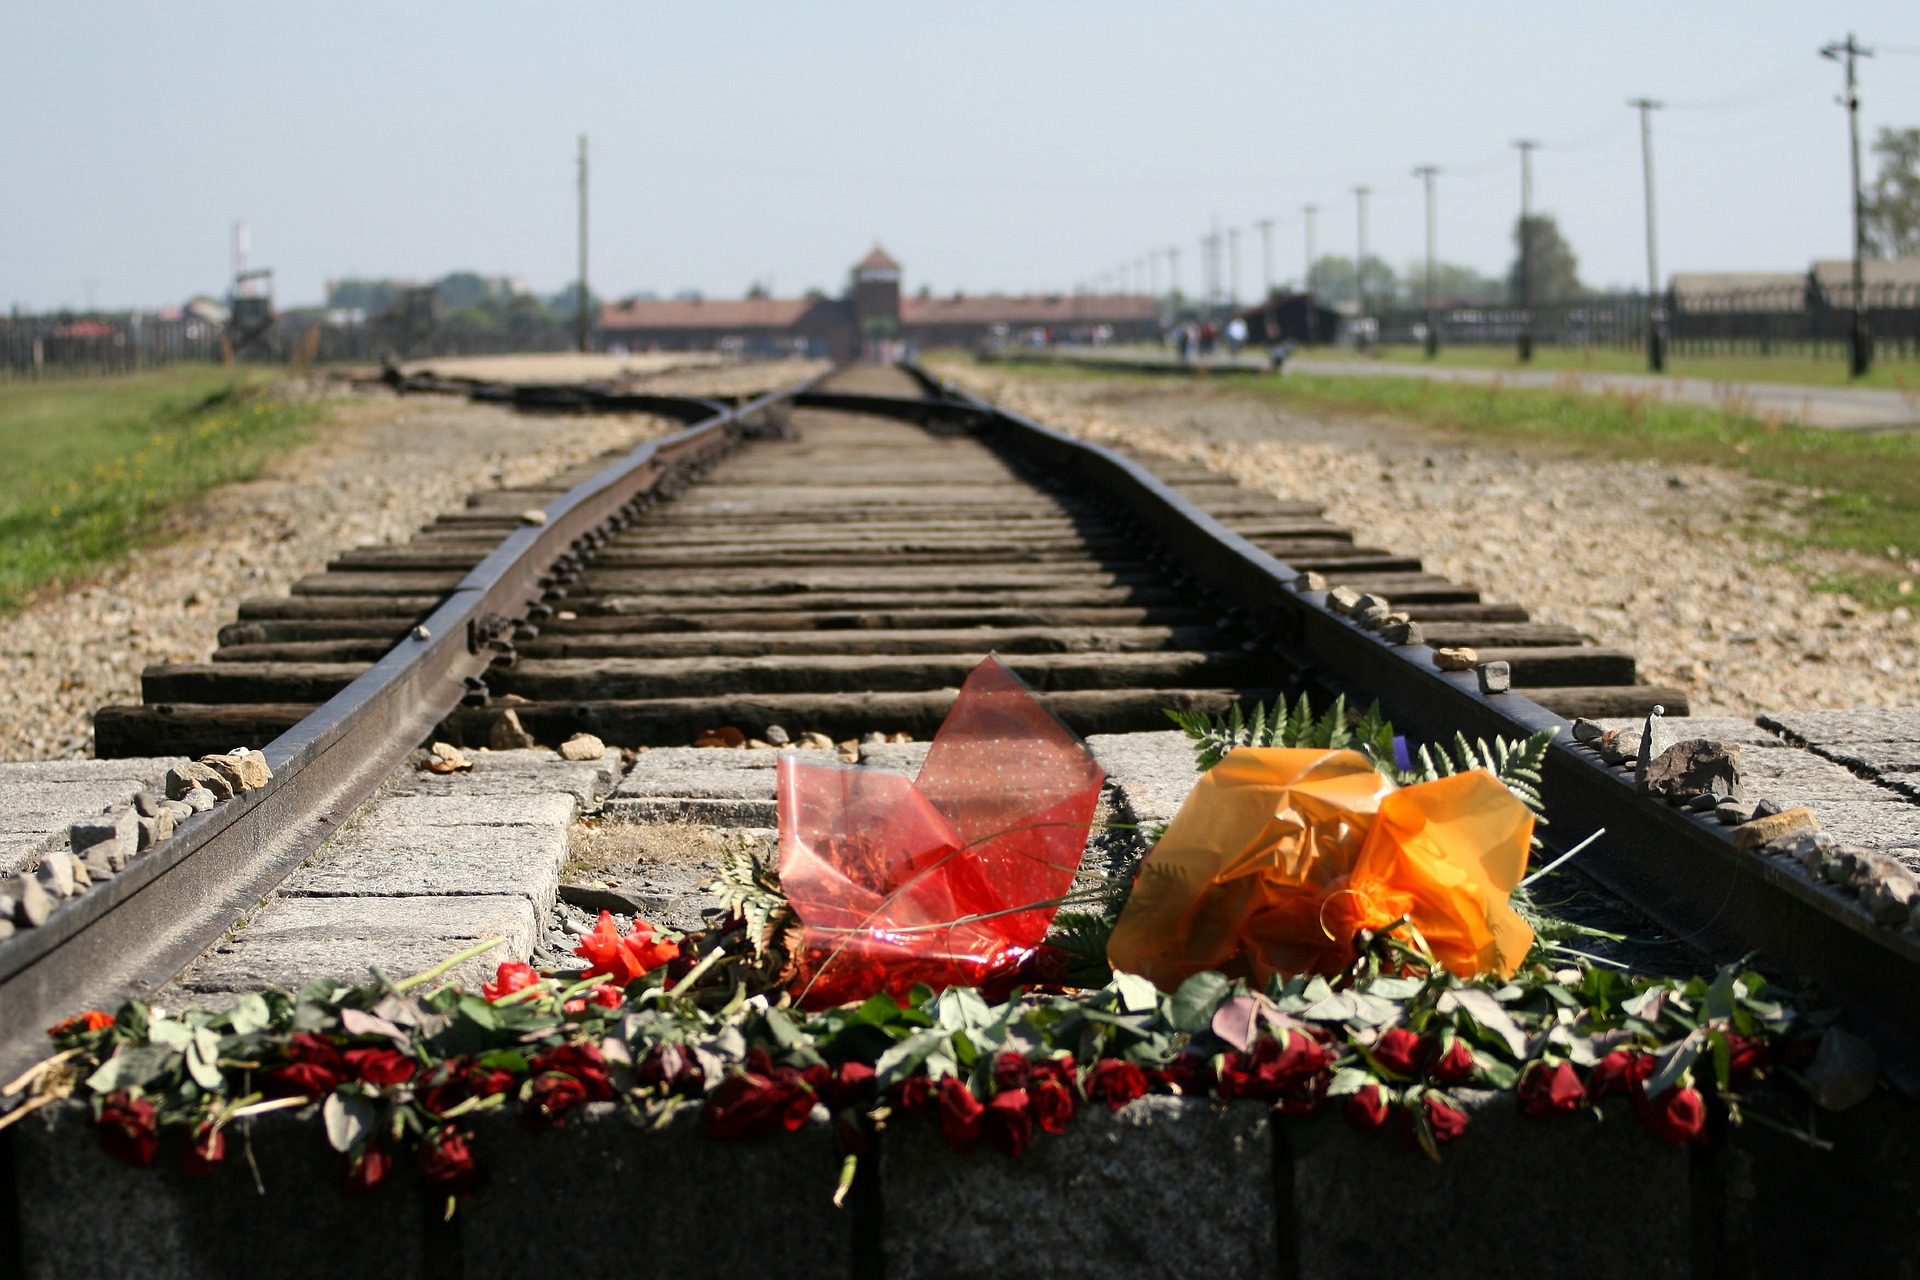 Auschwitz / Birkenau (c) Bild von Ron Porter auf Pixabay